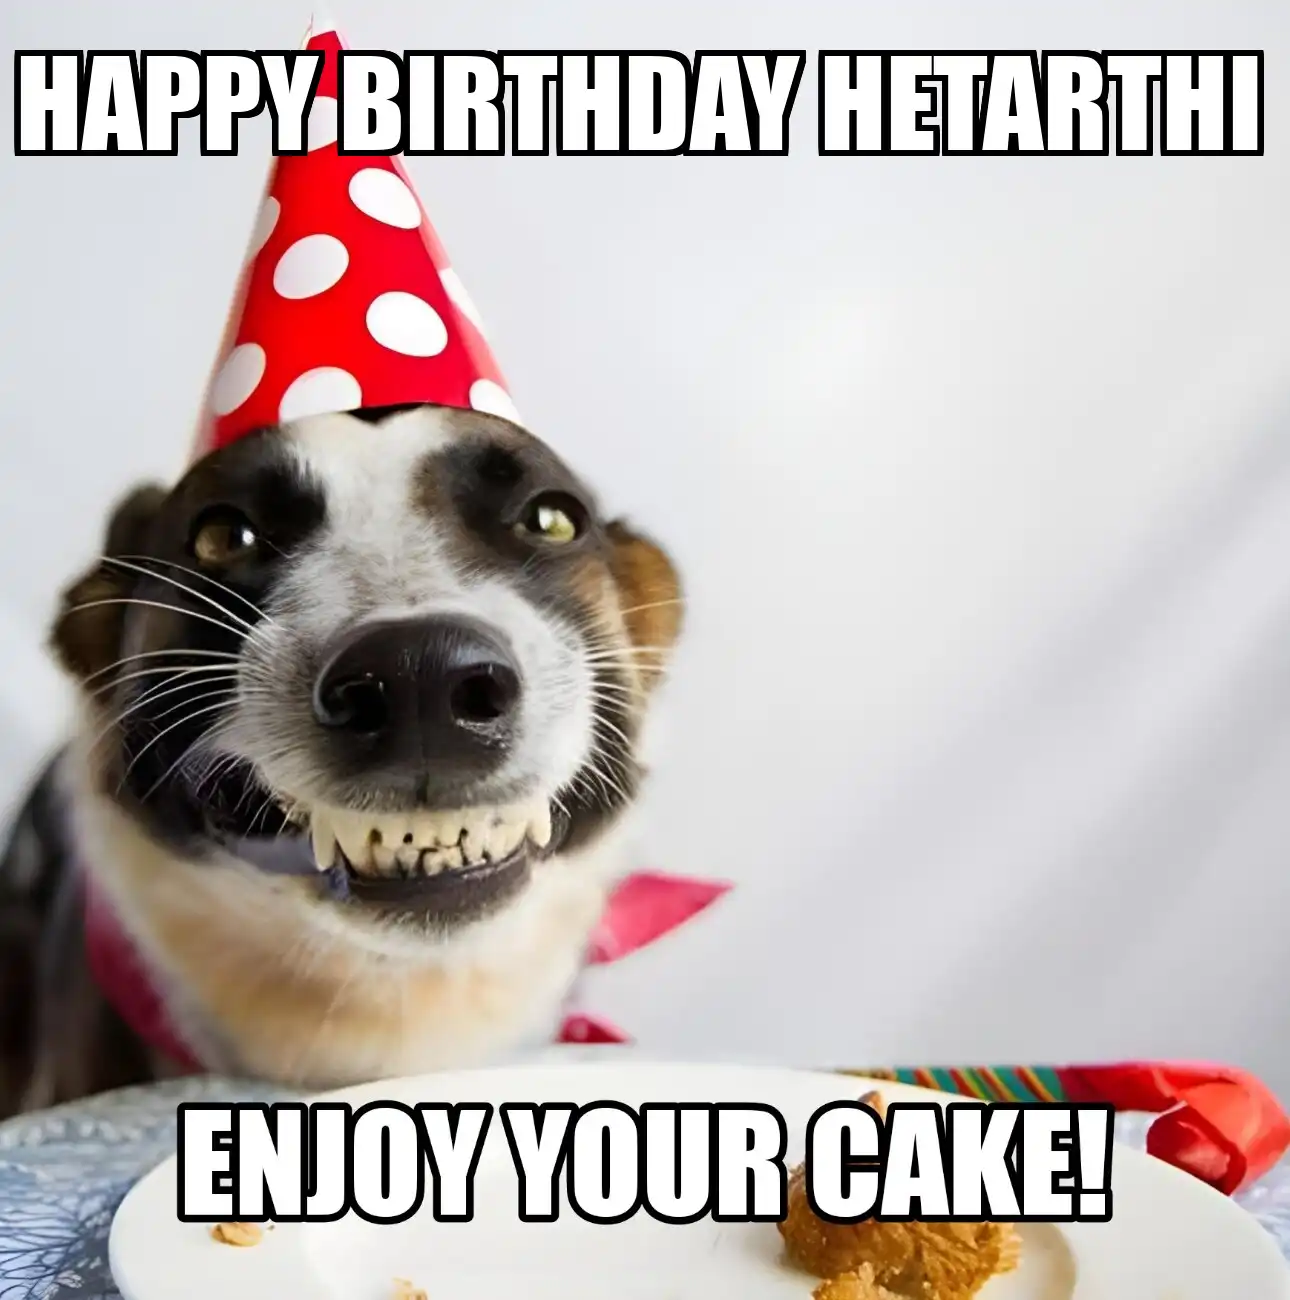 Happy Birthday Hetarthi Enjoy Your Cake Dog Meme